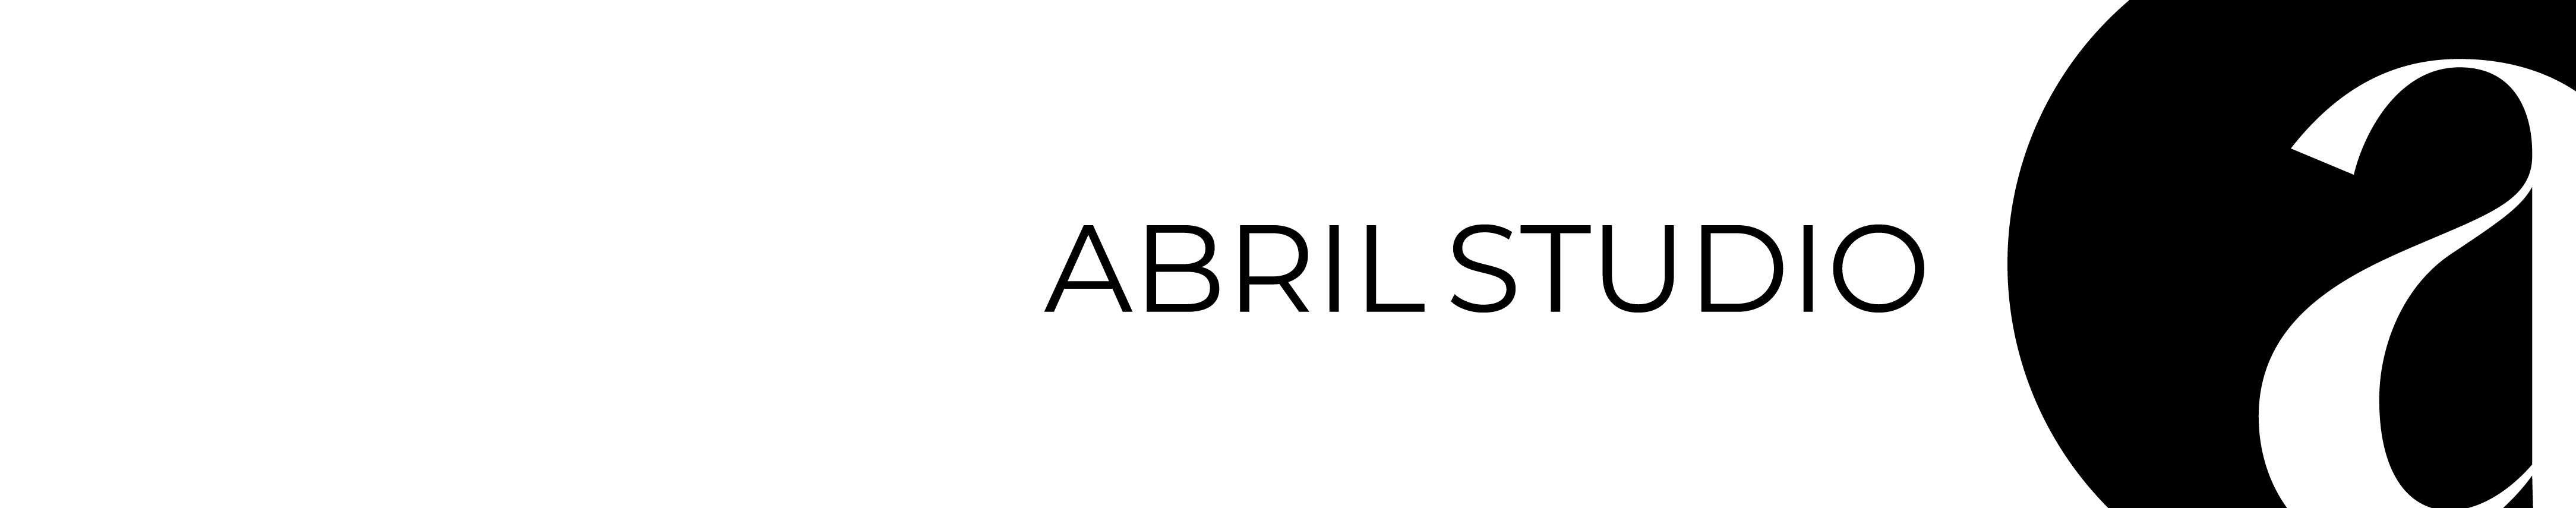 Abril Studio's profile banner